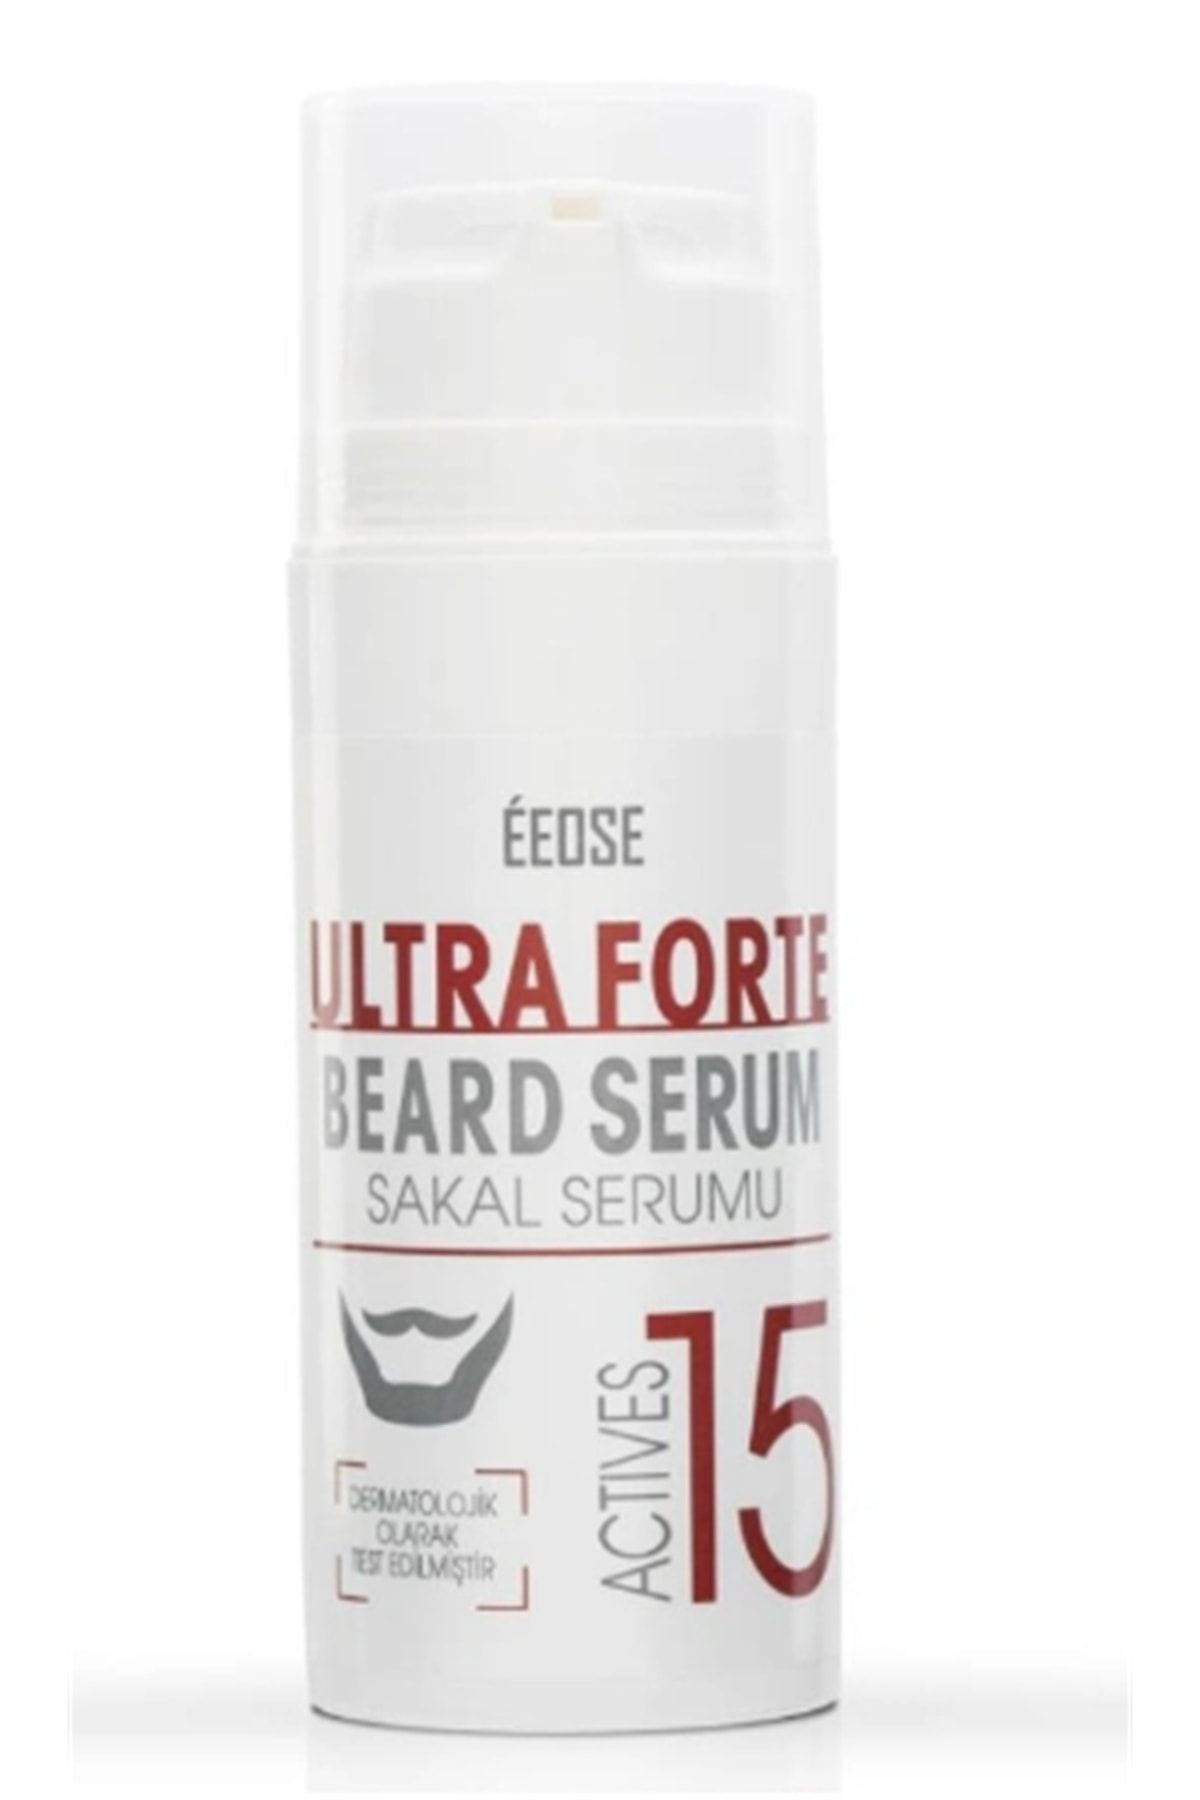 Eeose Ultra Forte Actives 15 Sakal Serumu 75 Ml